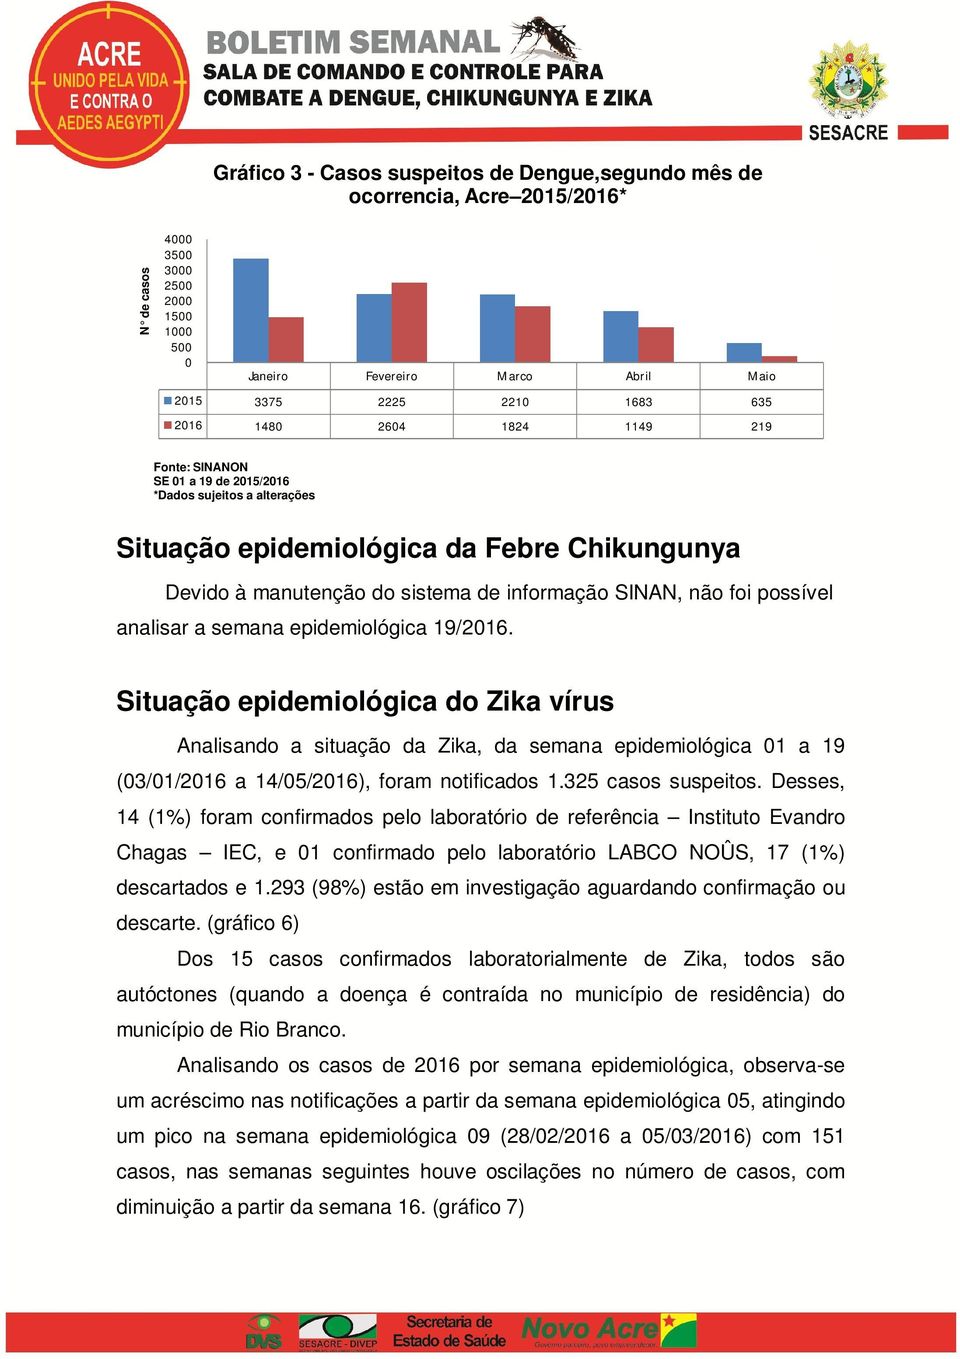 epidemiológica 19/216. Situação epidemiológica do Zika vírus Analisando a situação da Zika, da semana epidemiológica 1 a 19 (3/1/216 a 14/5/216), foram notificados 1.325 casos suspeitos.